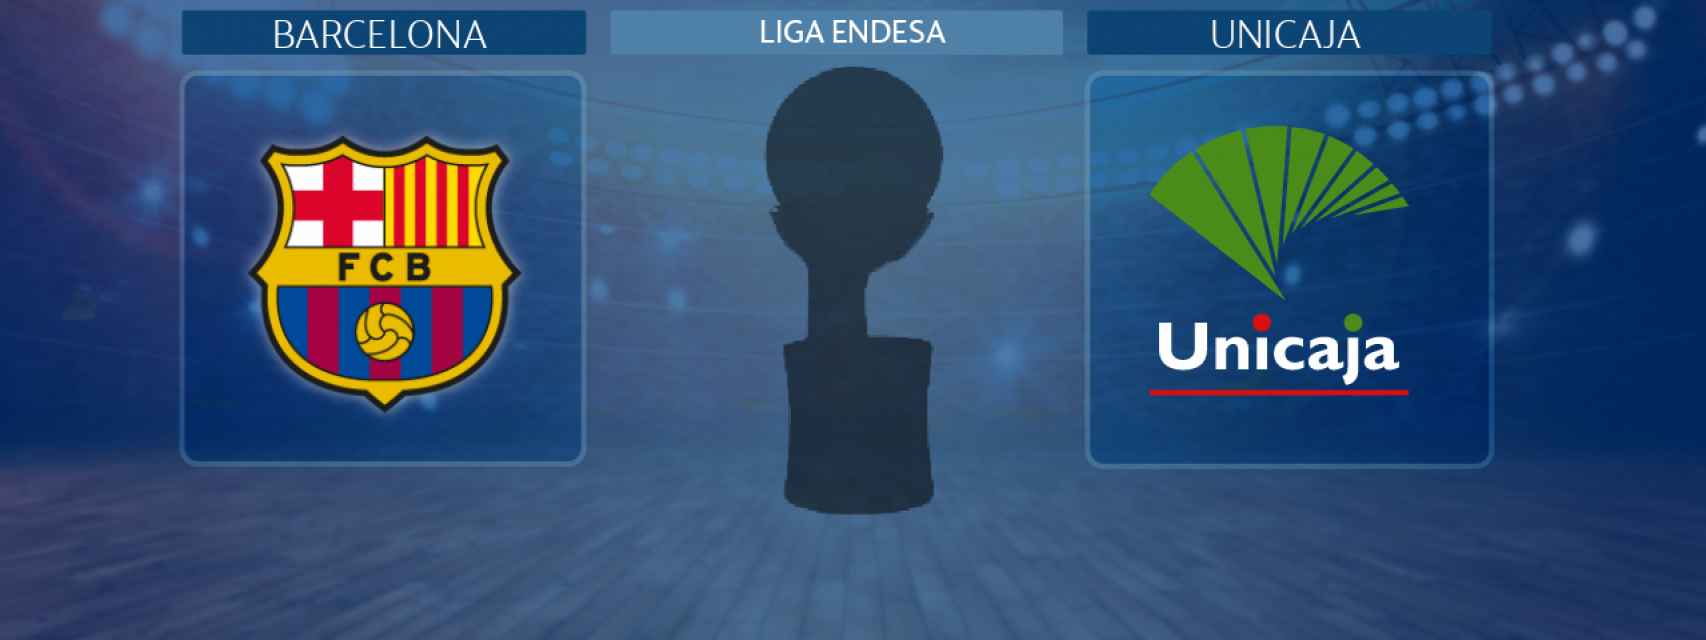 Barcelona - Unicaja Málaga, partido de la Liga Endesa